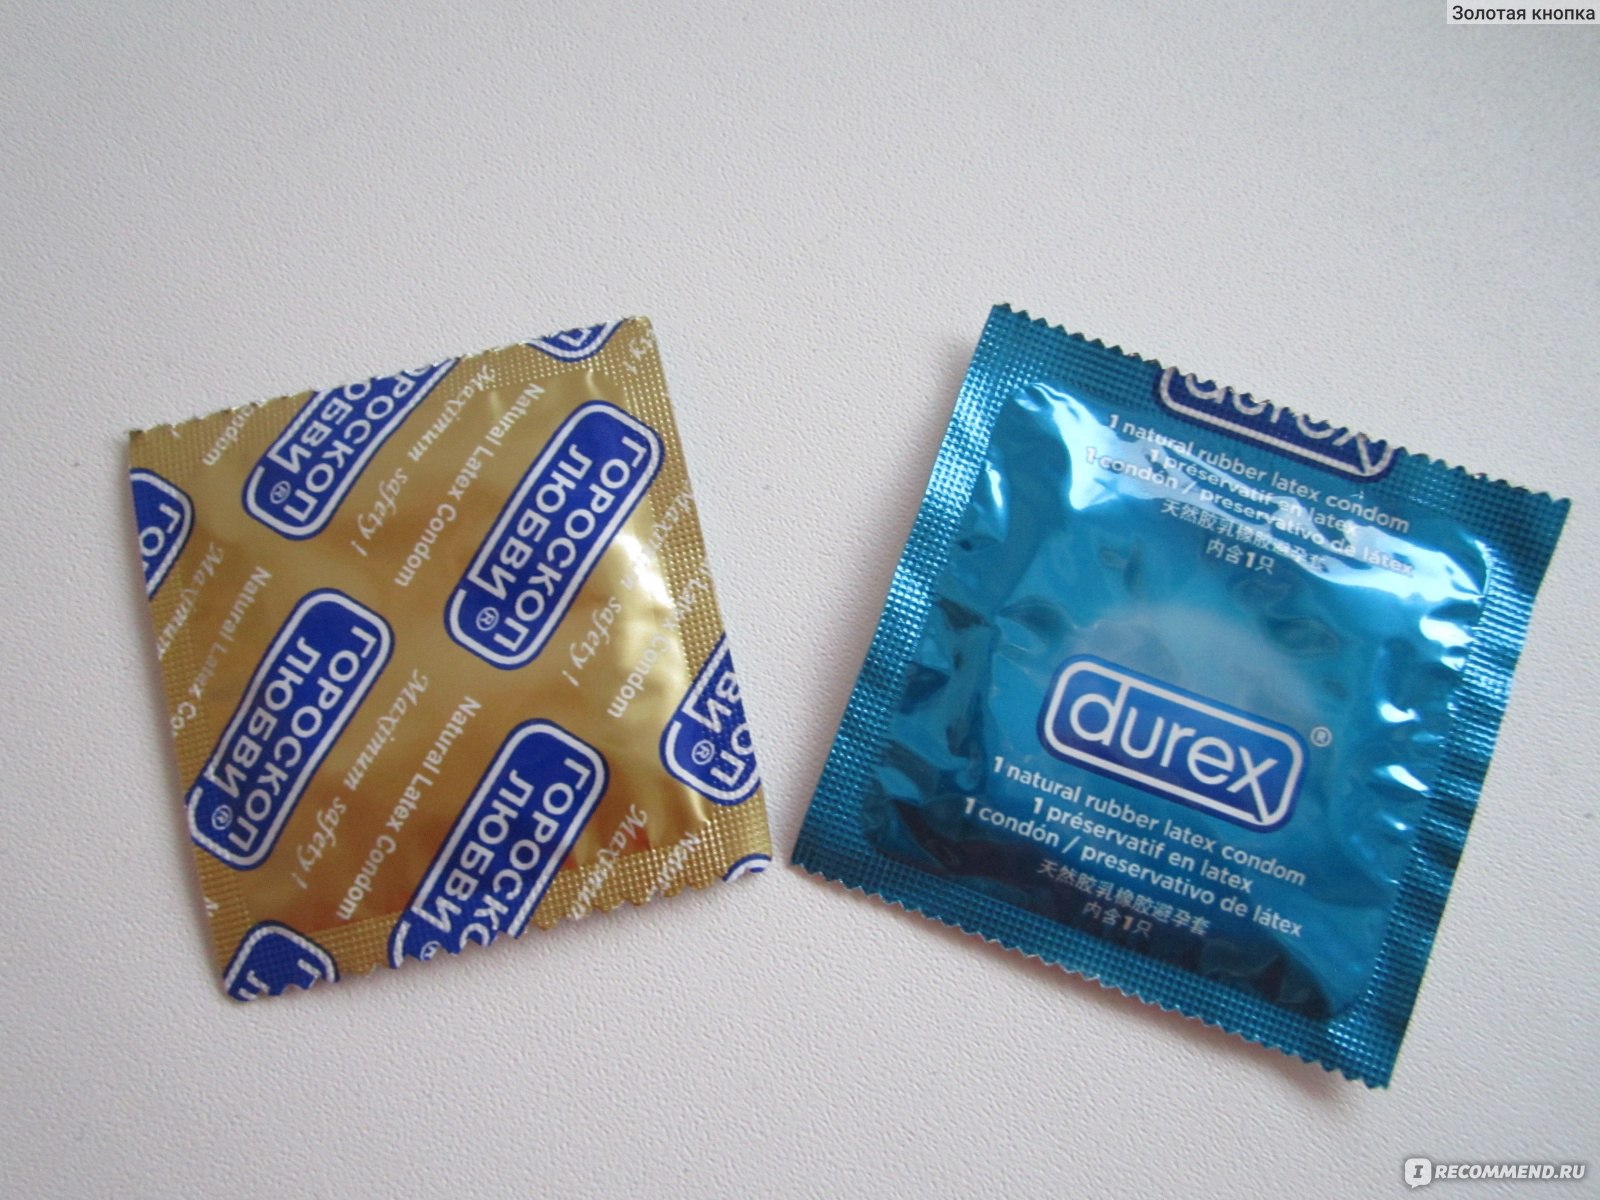 Что делать, если презерватив остался внутри. Чем это опасно?